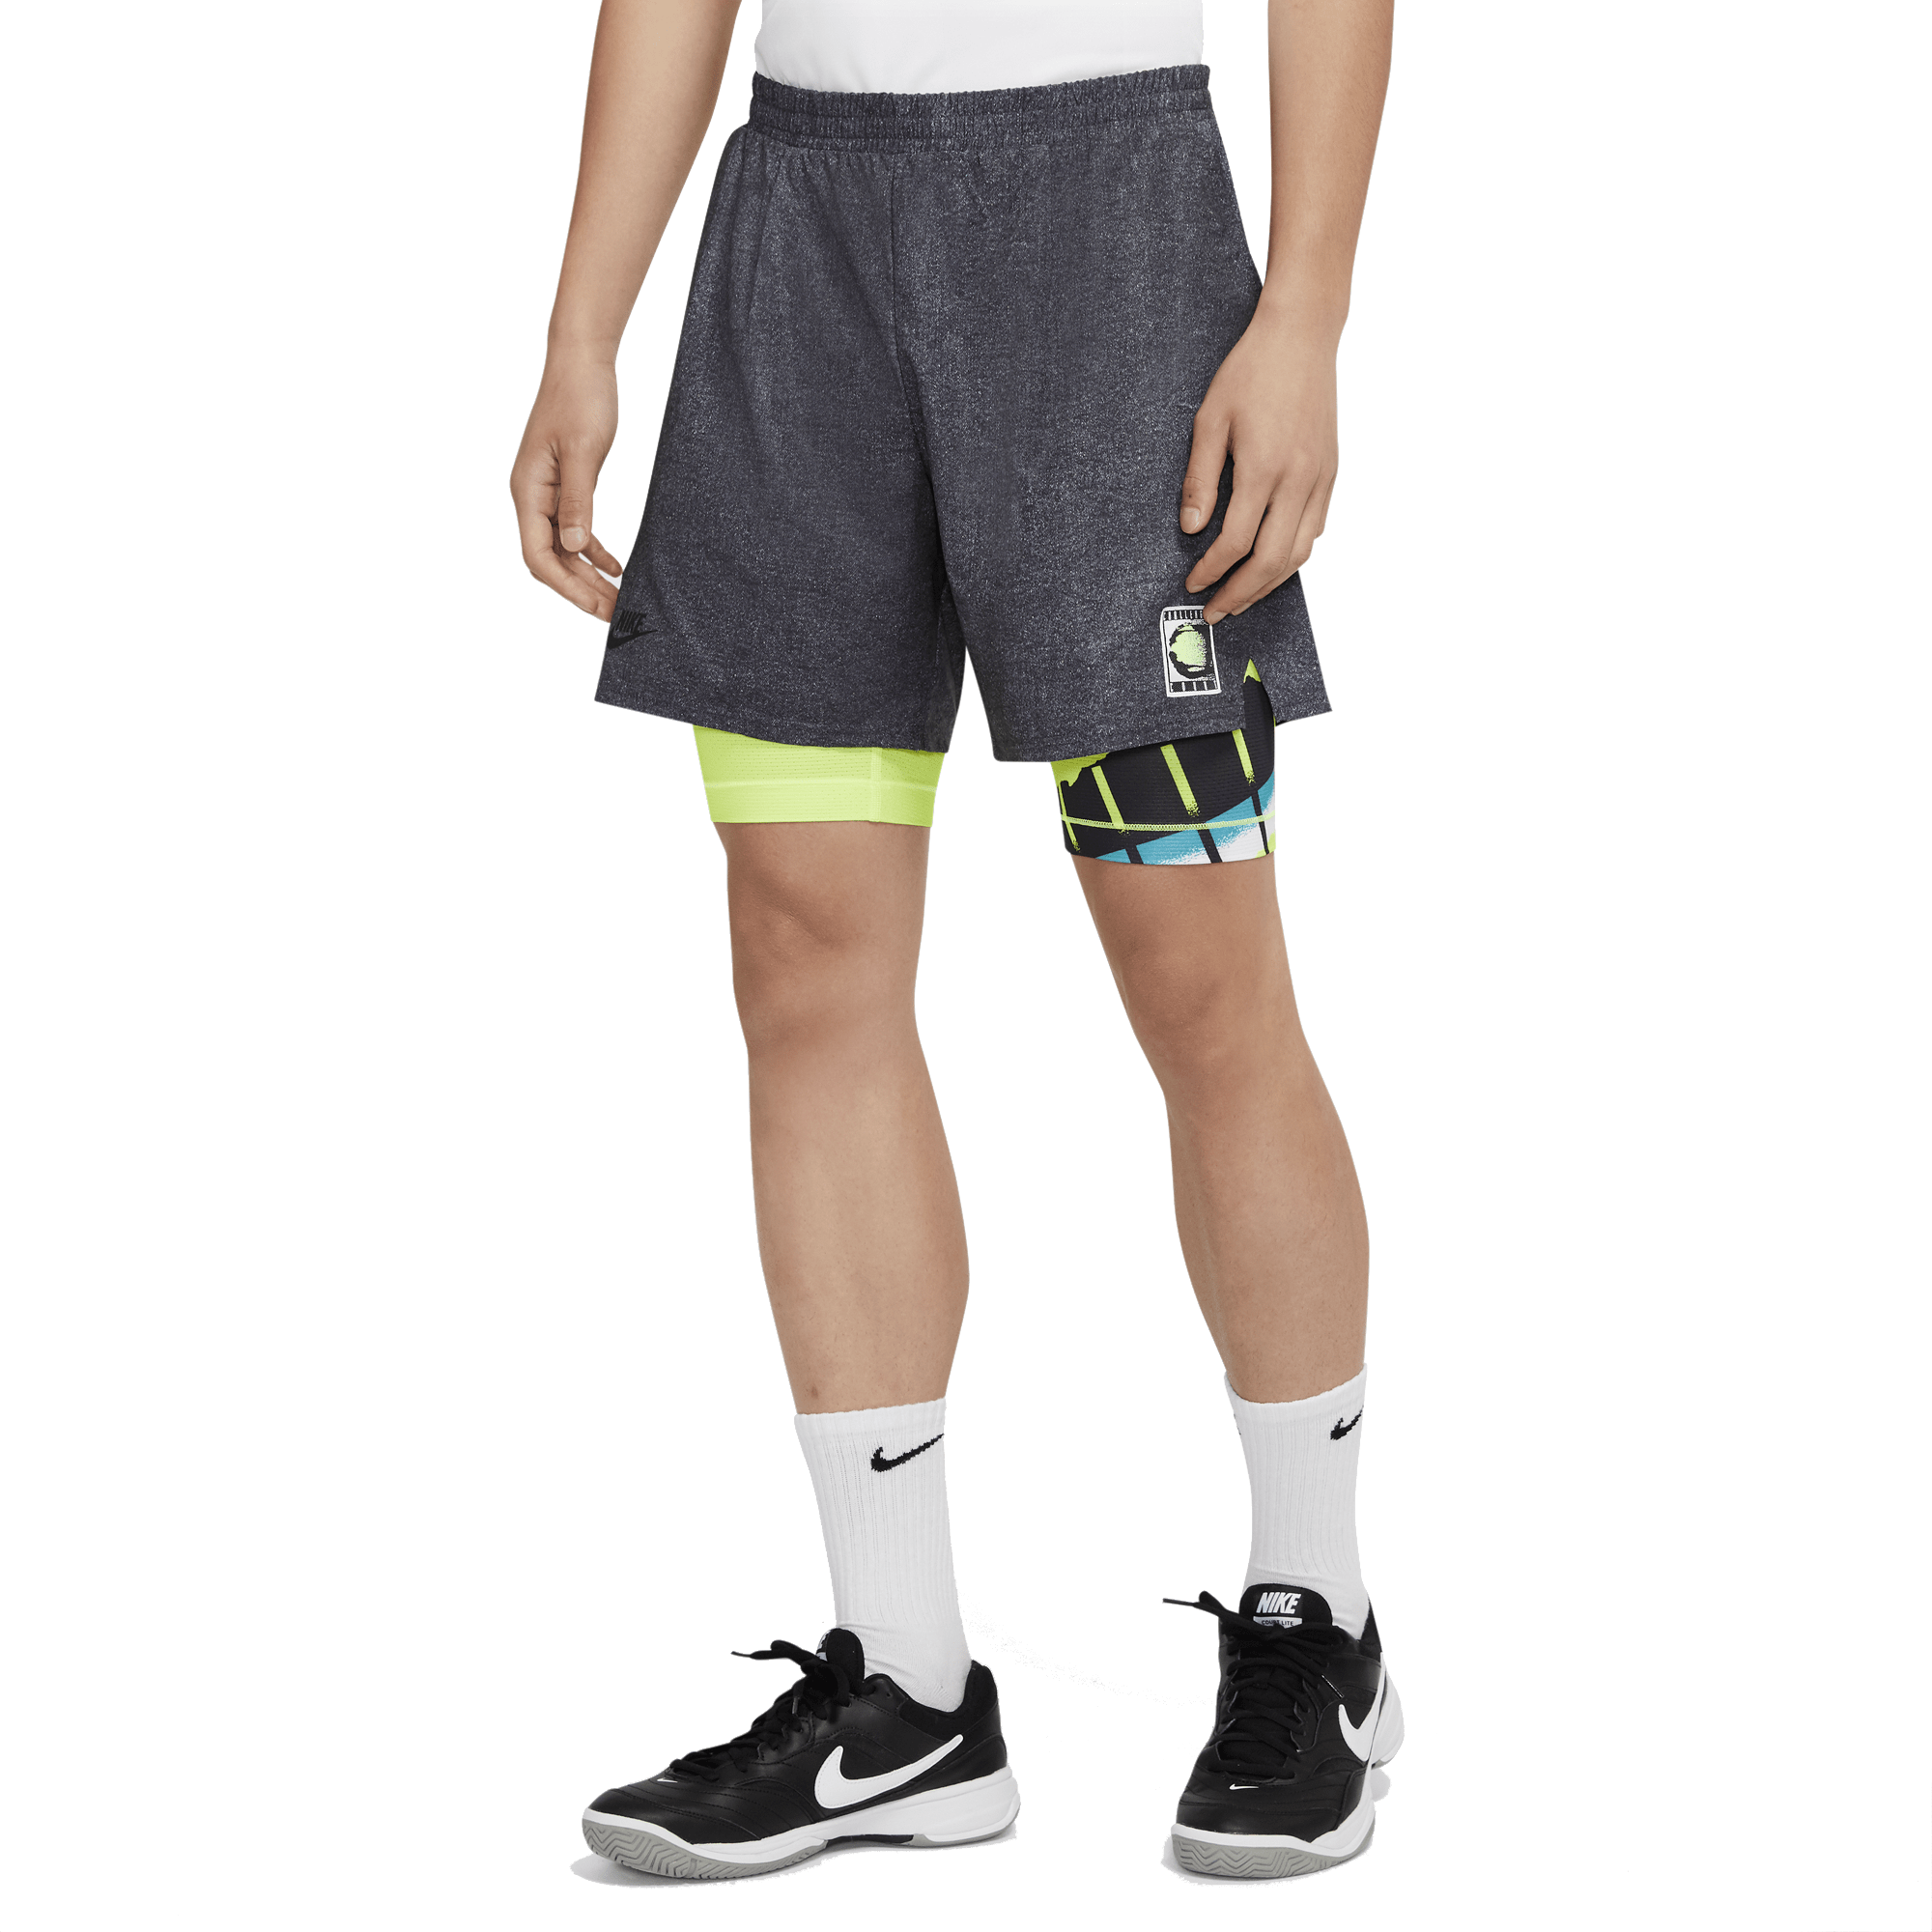 nikecourt flex ace men's tennis shorts